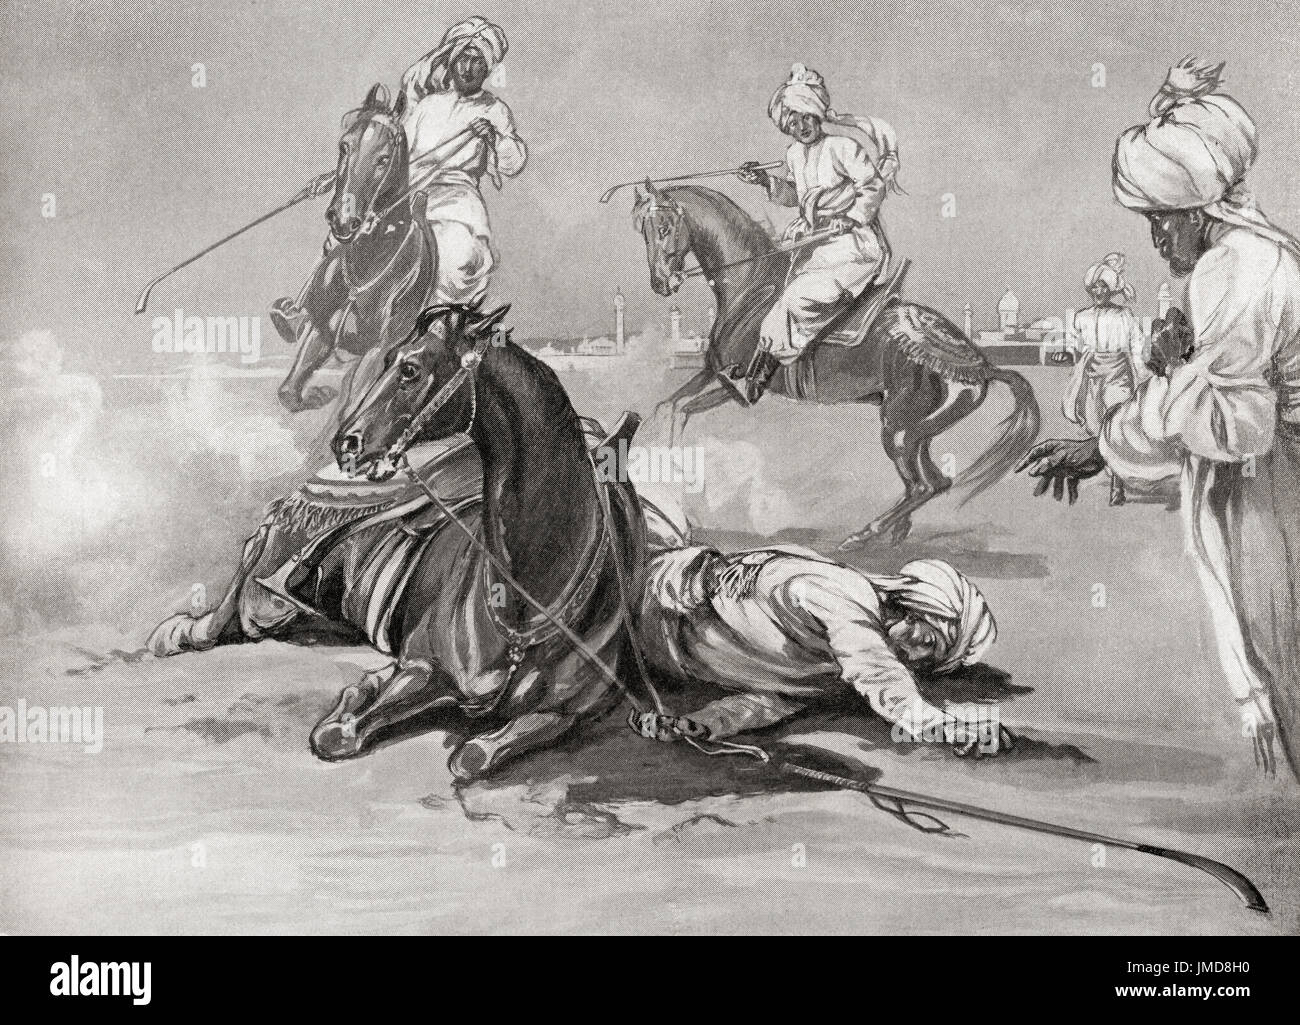 La muerte de al-Dīn Aibak Quṭb como resultado de una caída de su caballo mientras jugaba Chaugan. Quṭb al-Dīn Aibak también se describían Quṭb ud-Dīn Aibak o Qutub ud-Din Aybak, 1150-1210. Fundador de la dinastía mameluca del Sultanato de Delhi. La historia de Hutchinson de las Naciones, publicado en 1915. Foto de stock